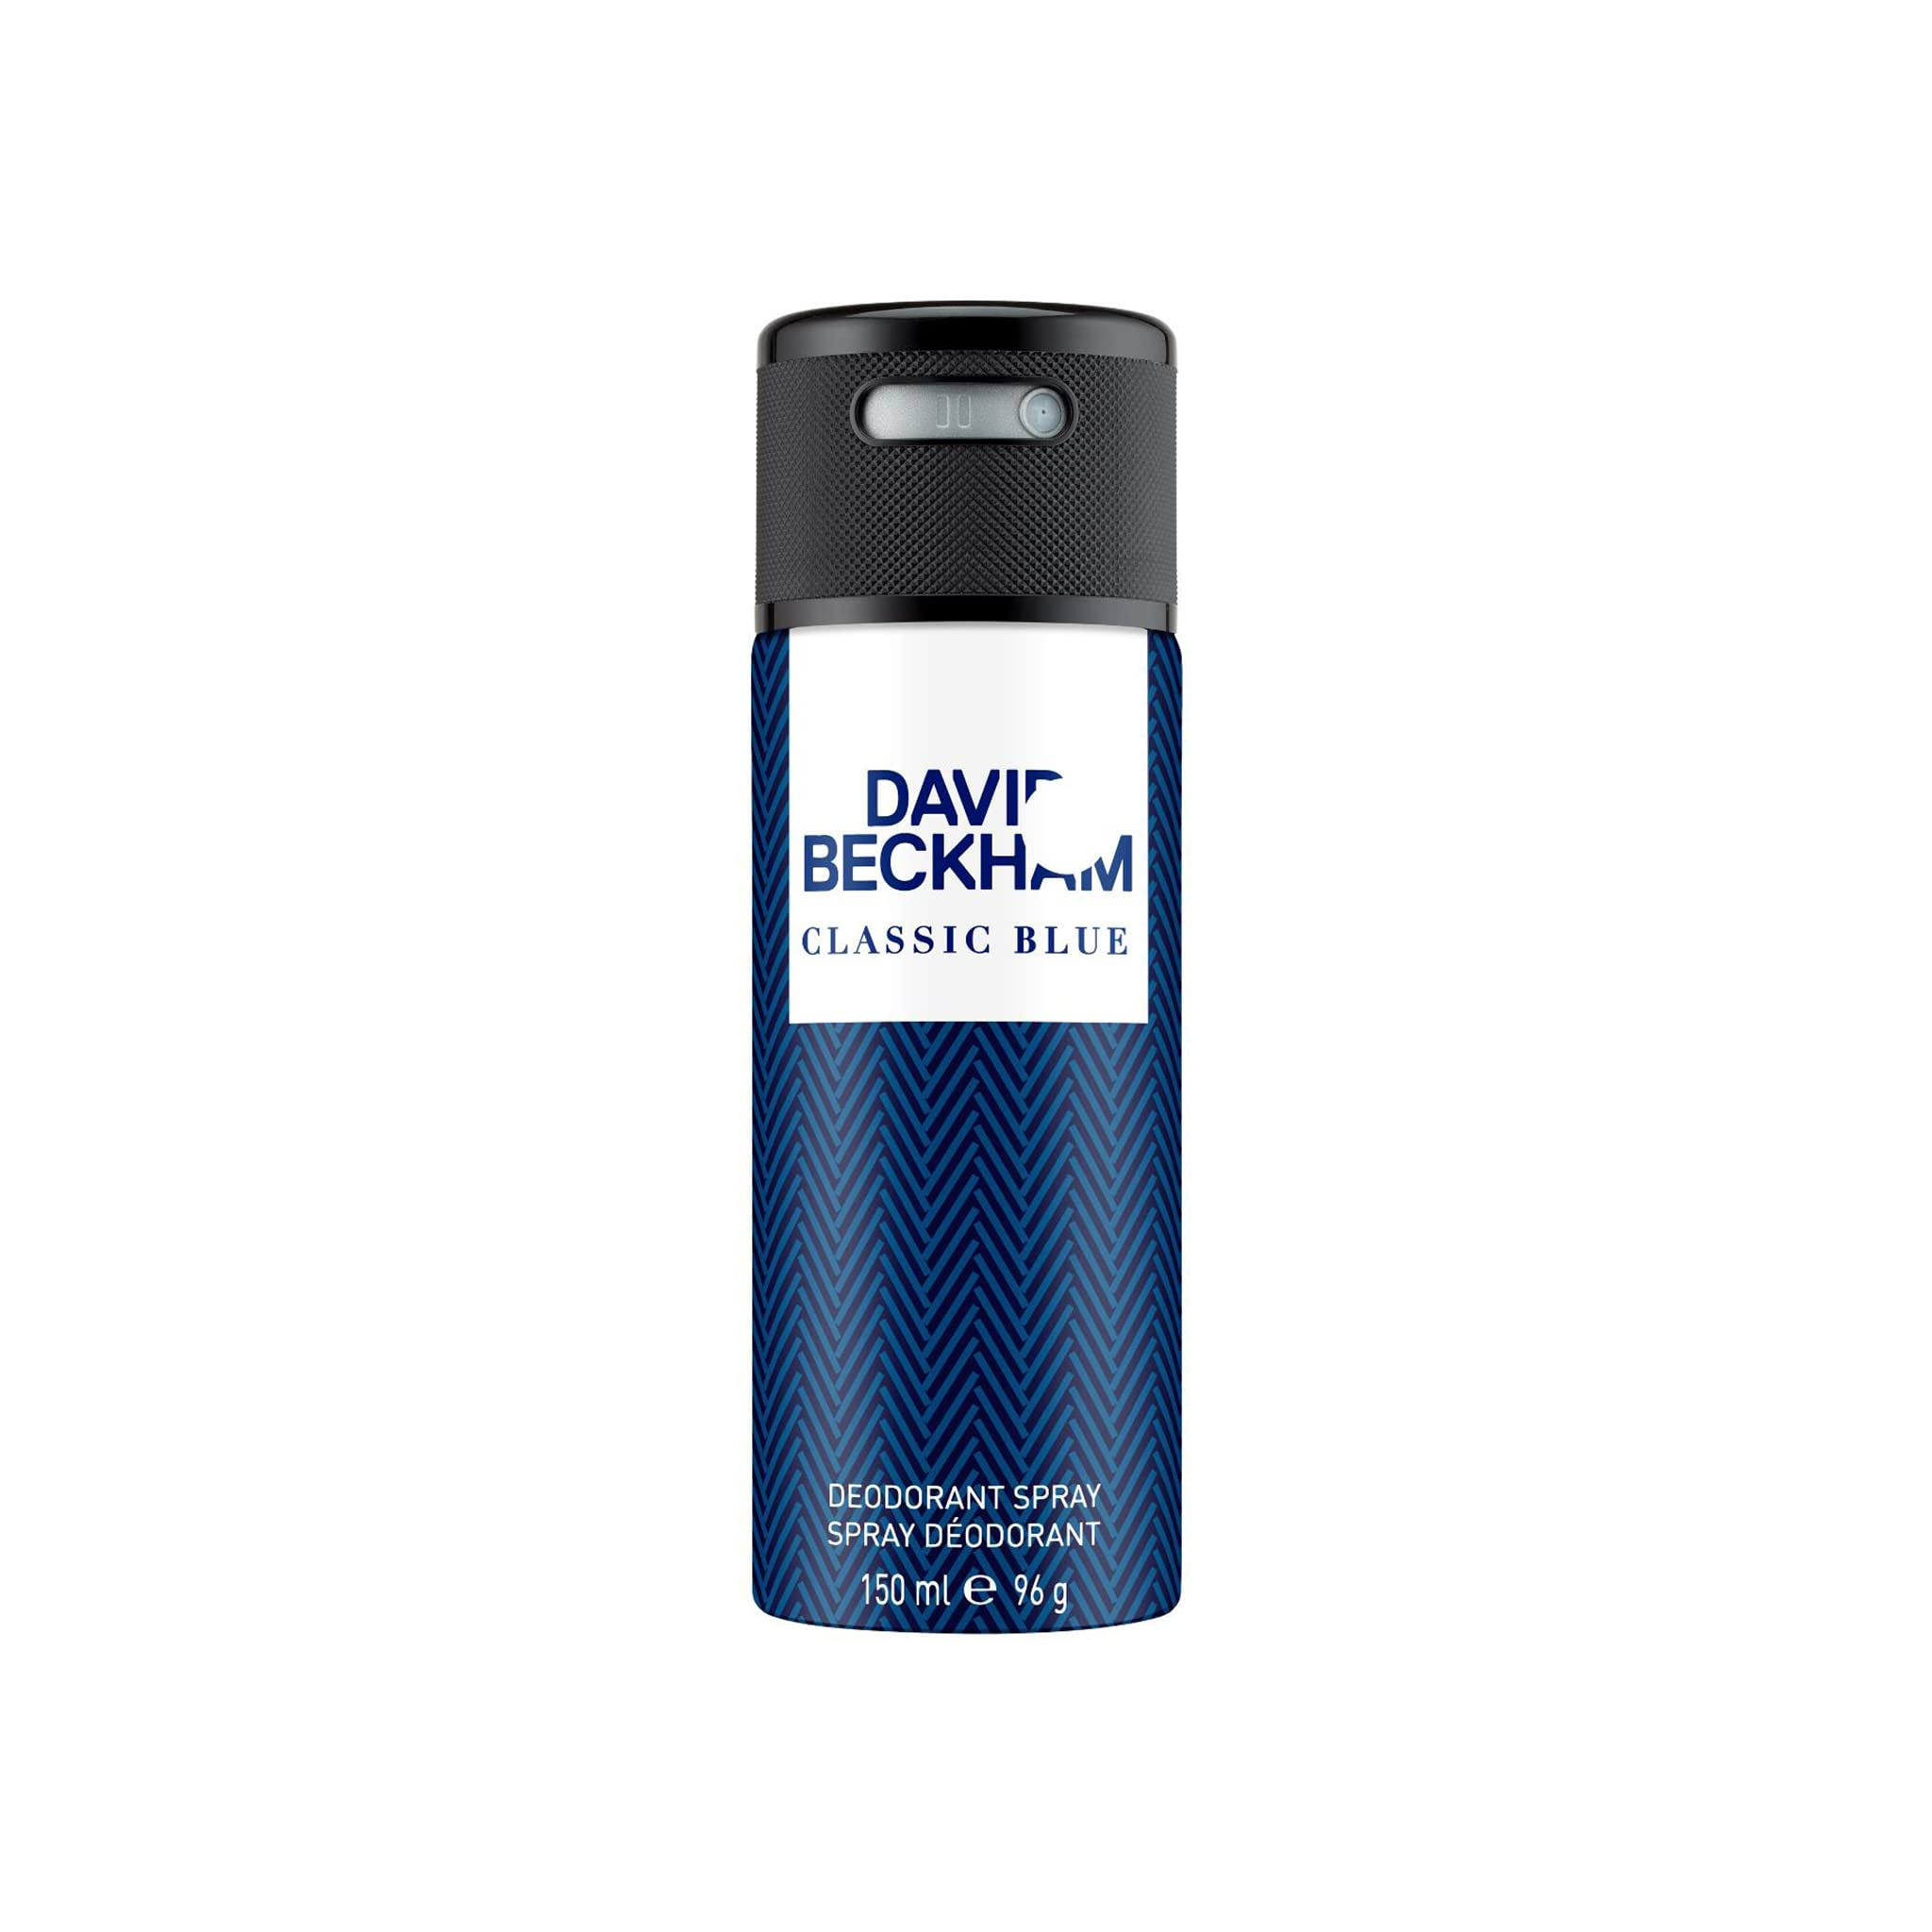 David Beckham Classic Blue for Men Deodorant Spray - 150ml